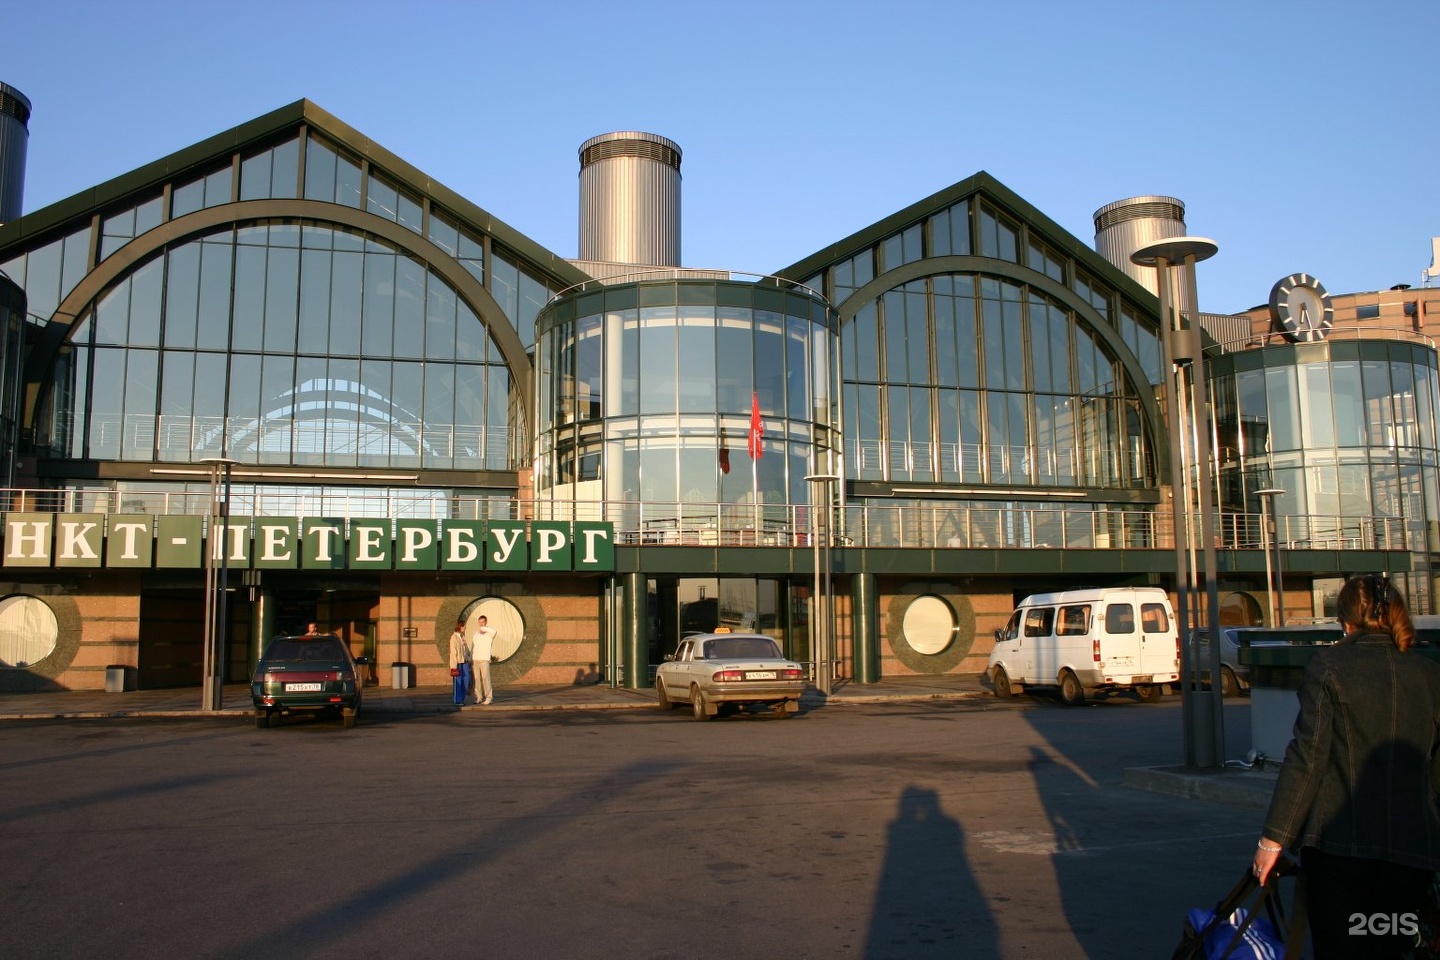 ладожский вокзал санкт петербург фото внутри